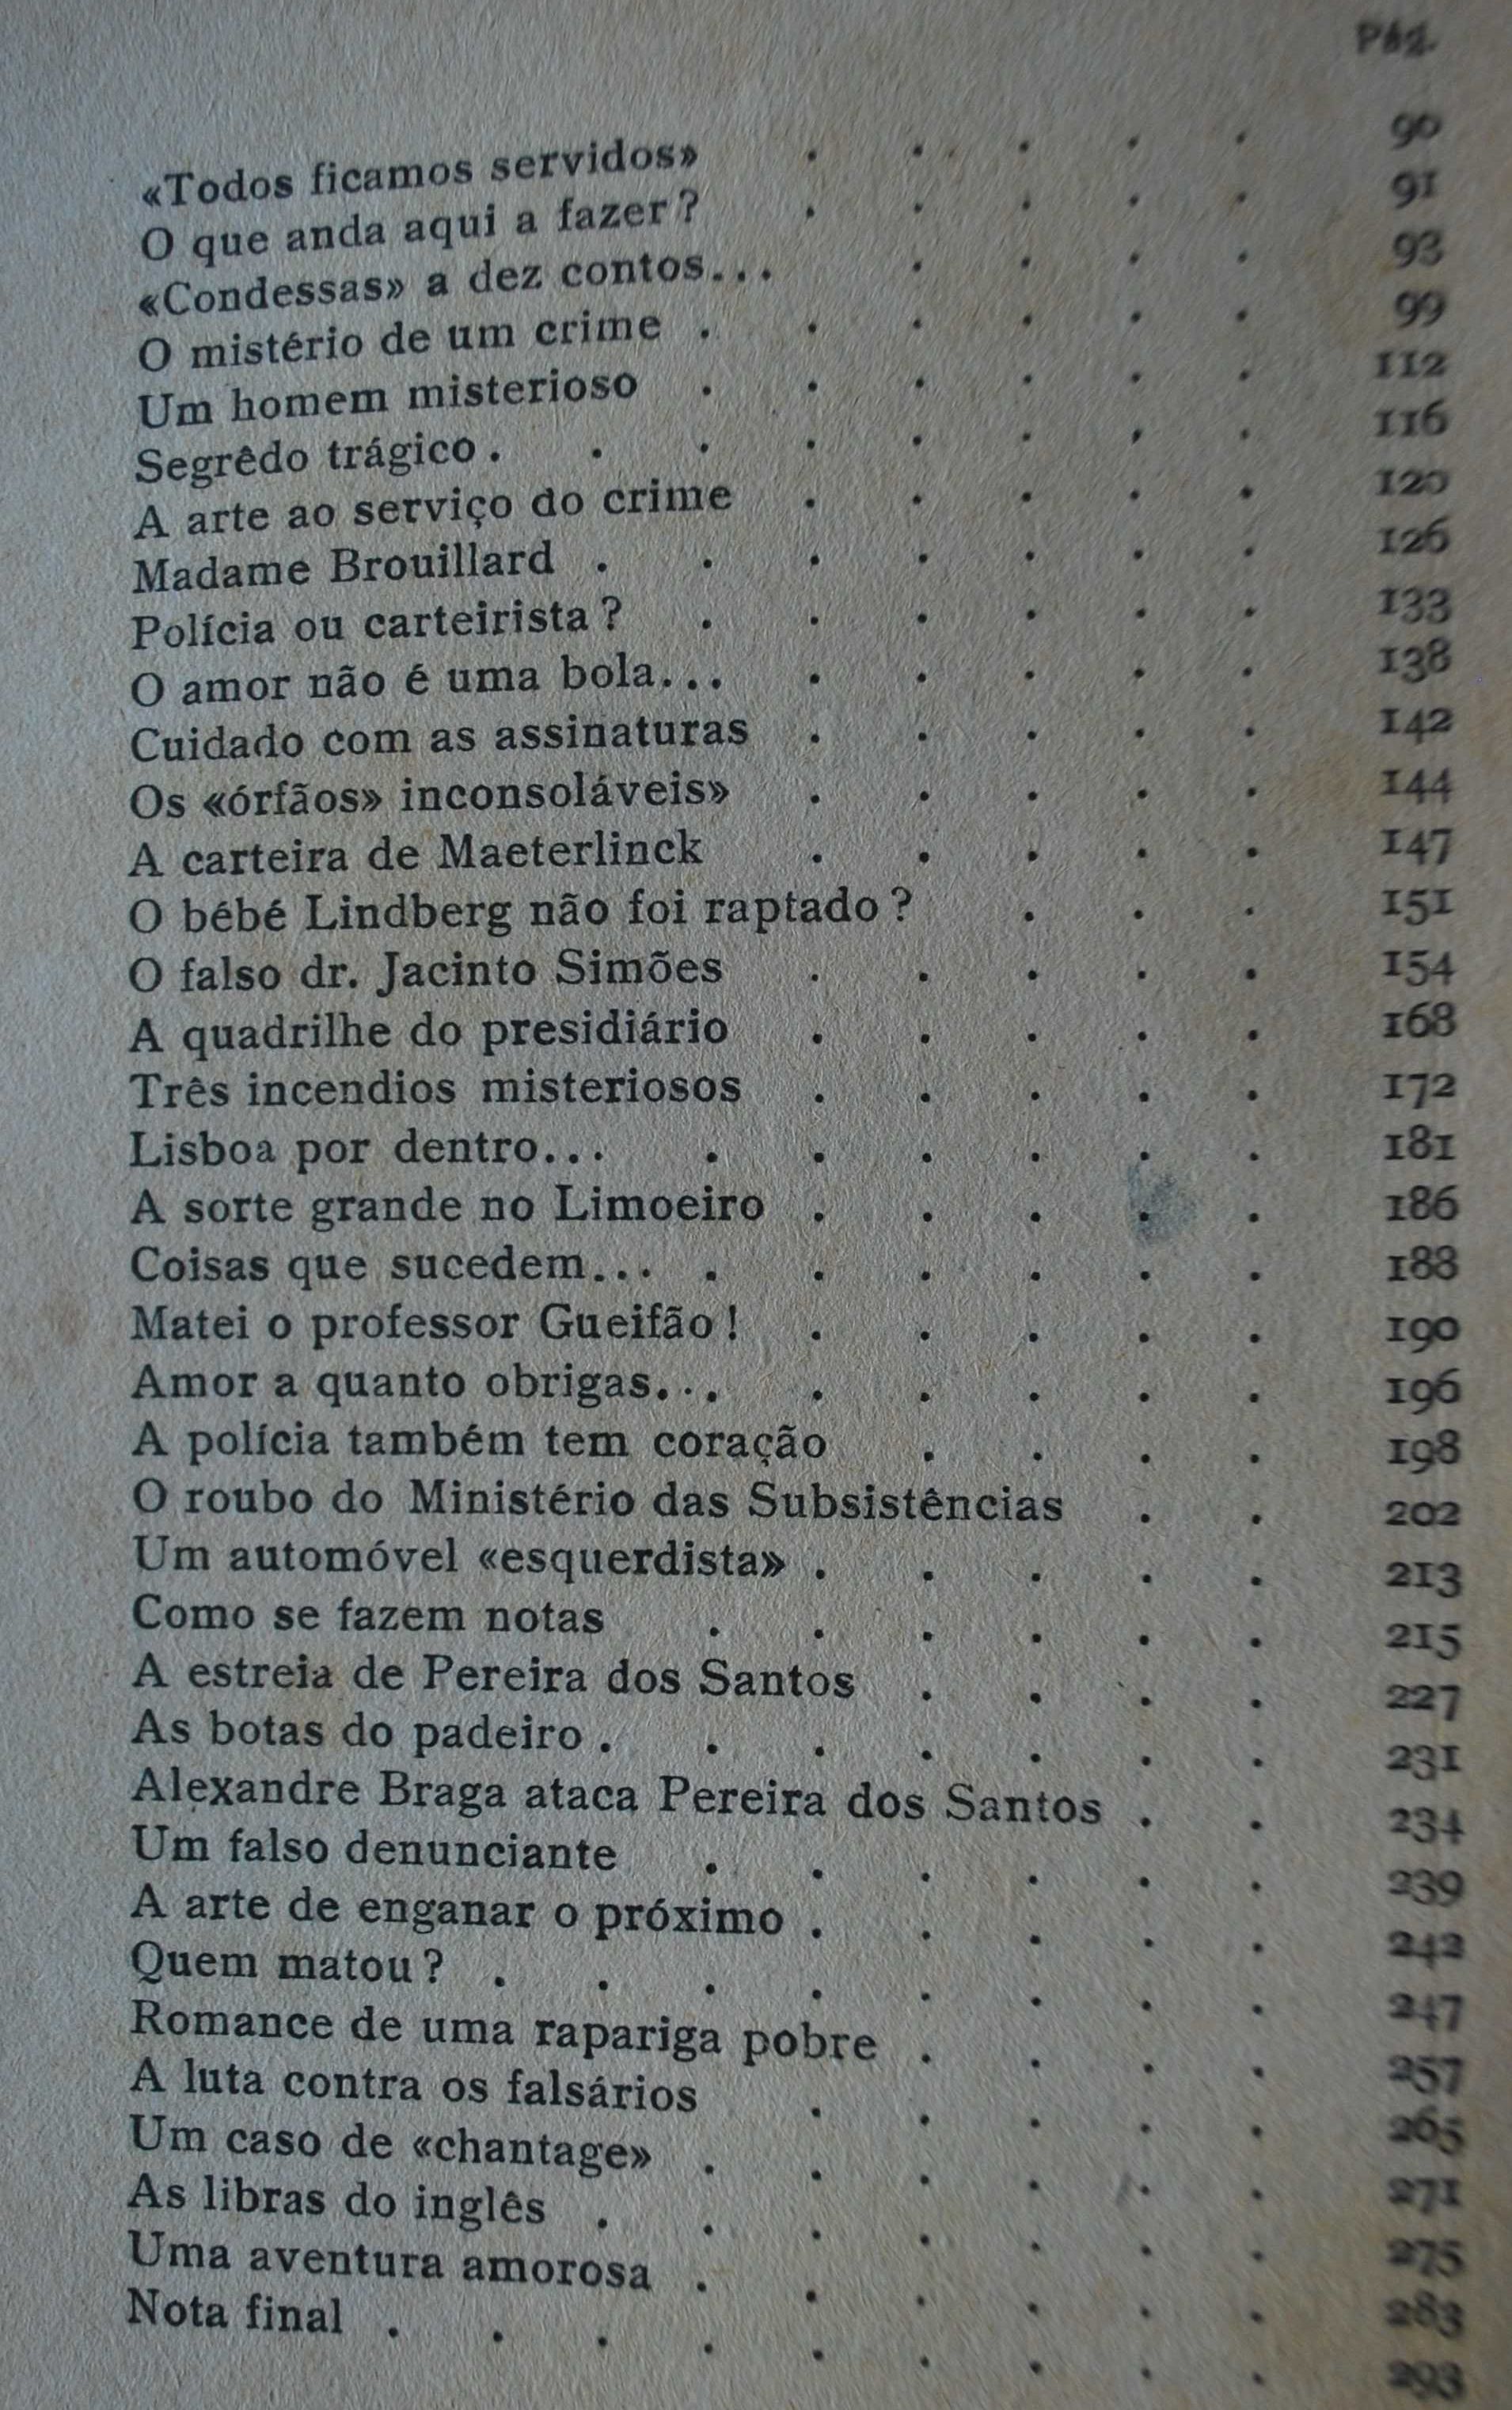 As Memórias do Chefe da Polícia Pereira dos Santos (1ª Edição 1945)